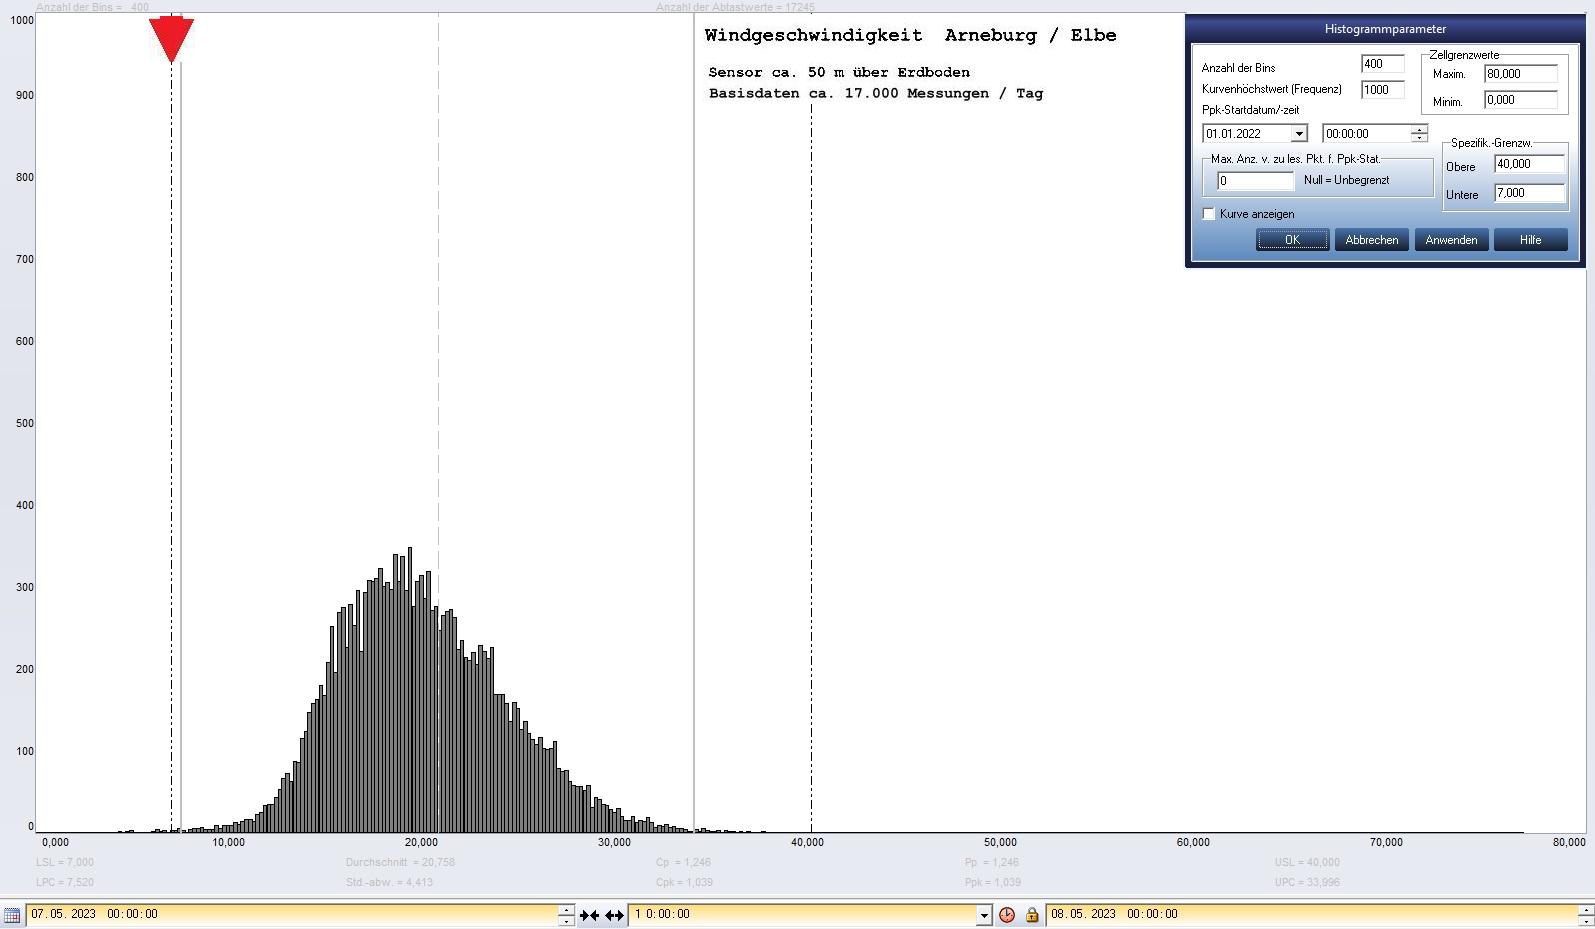 Arneburg Tages-Histogramm Winddaten, 07.05.2023
  Histogramm, Sensor auf Gebude, ca. 50 m ber Erdboden, Basis: 5s-Aufzeichnung